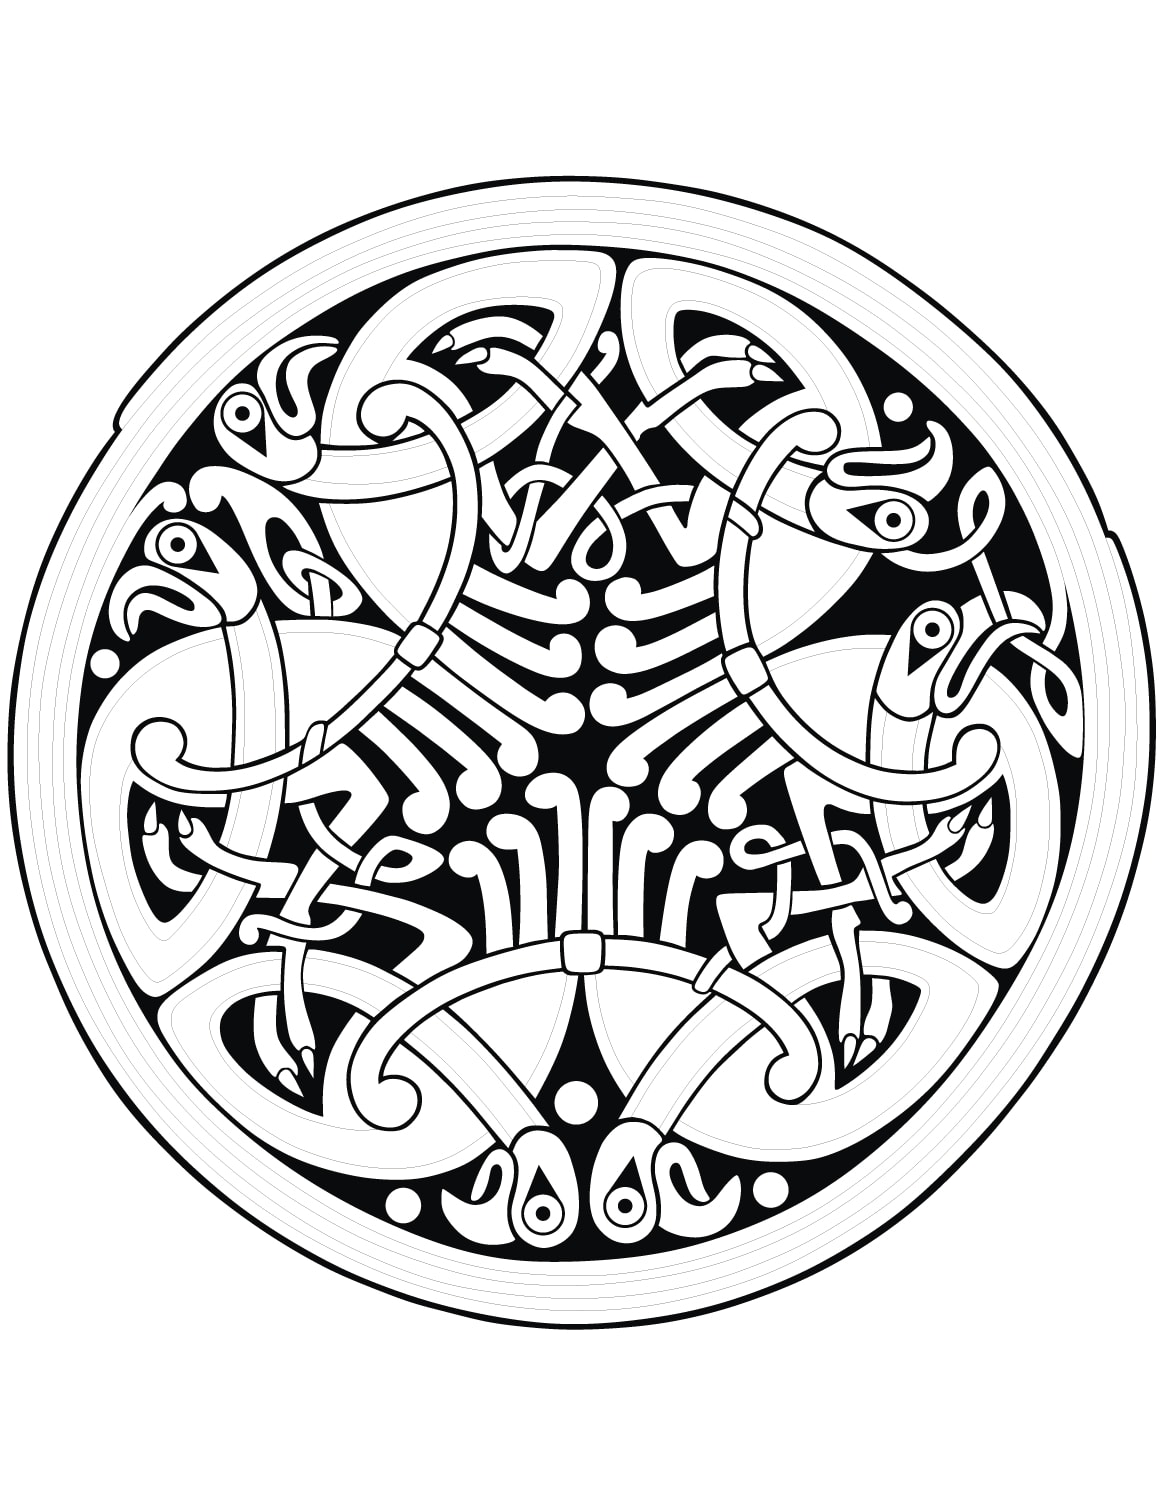 Ein nicht alltägliches Mandala mit keltischen Formen, mit dem Sie eine schöne Zeit beim Ausmalen verbringen können, ohne sich das Leben mit dem Ausmalen winziger Flächen zu erschweren.